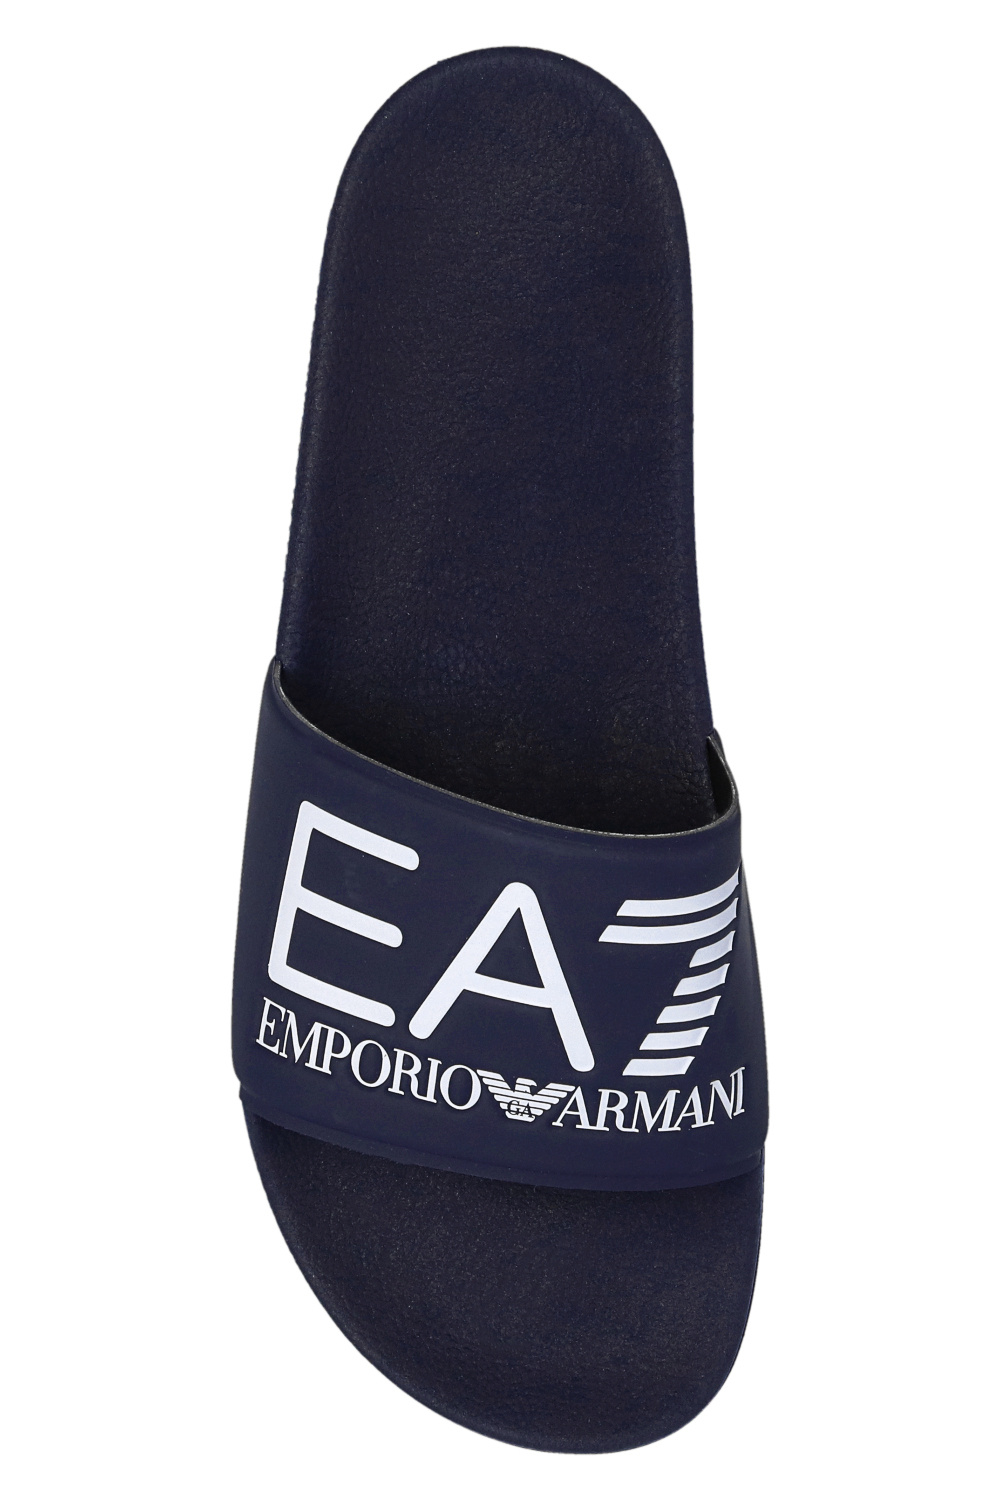 Armani Shoes zigzag Armani | double-breasted Giorgio | - Men\'s notched-collar Armani IetpShops Blau Emporio - shirt EA7 blazer Emporio print